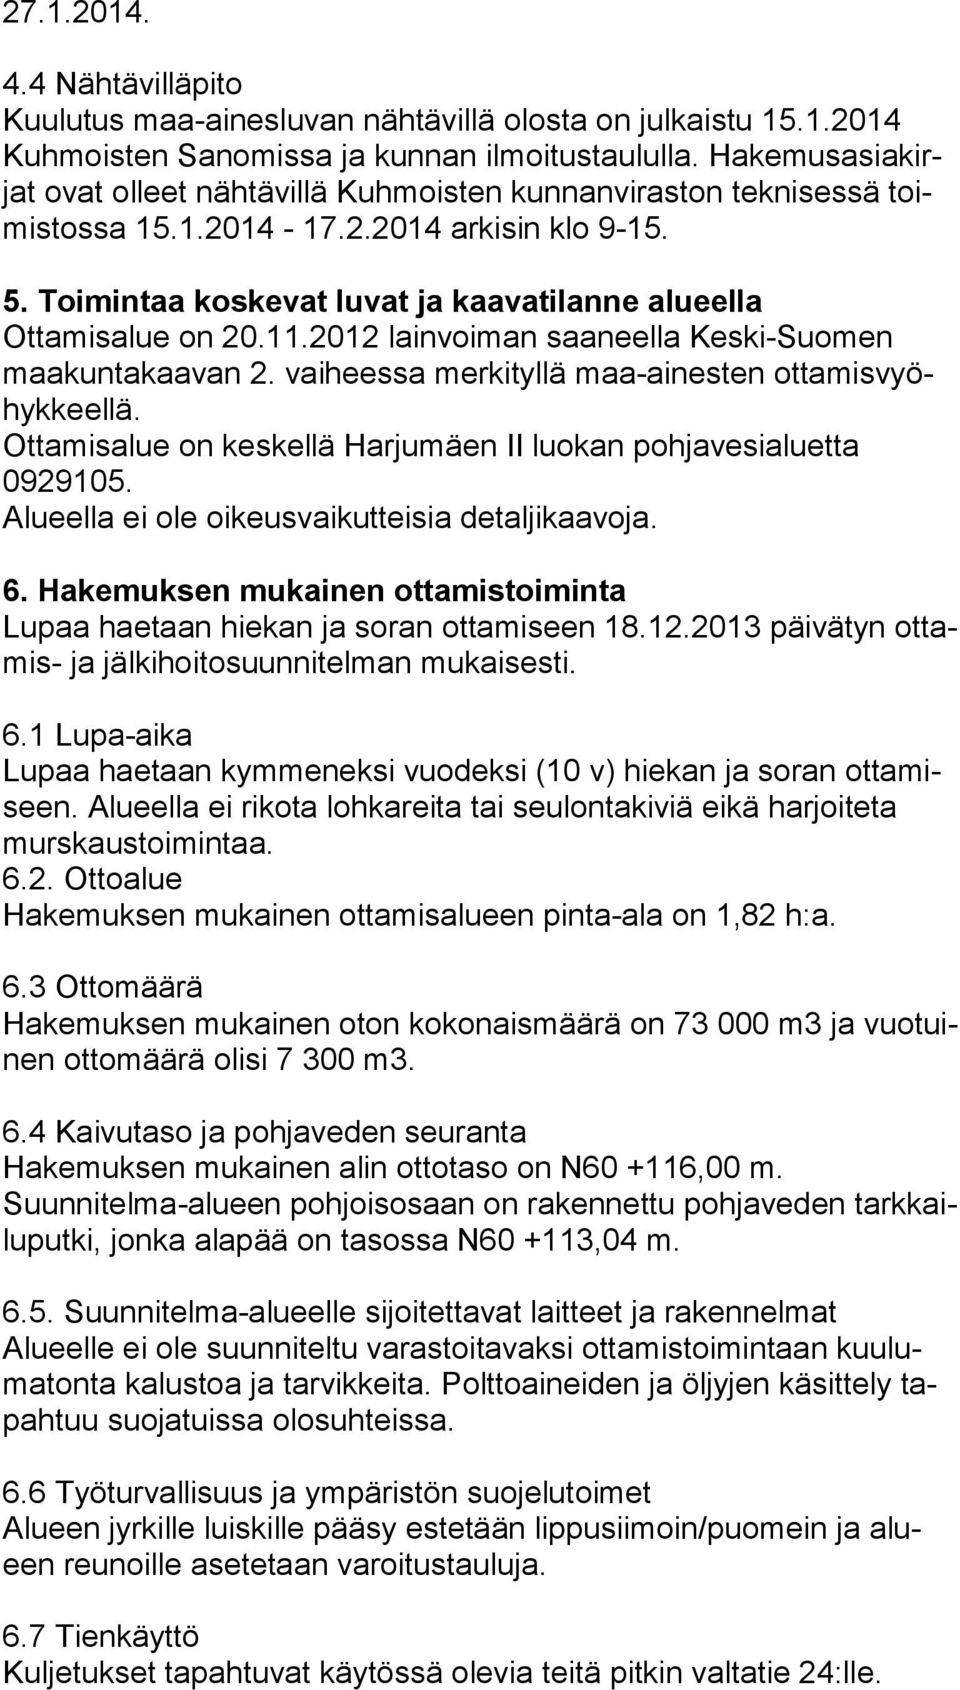 Toimintaa koskevat luvat ja kaavatilanne alueella Ottamisalue on 20.11.2012 lainvoiman saaneella Keski-Suomen maa kun ta kaa van 2. vaiheessa merkityllä maa-ainesten ot ta mis vyöhyk keel lä.